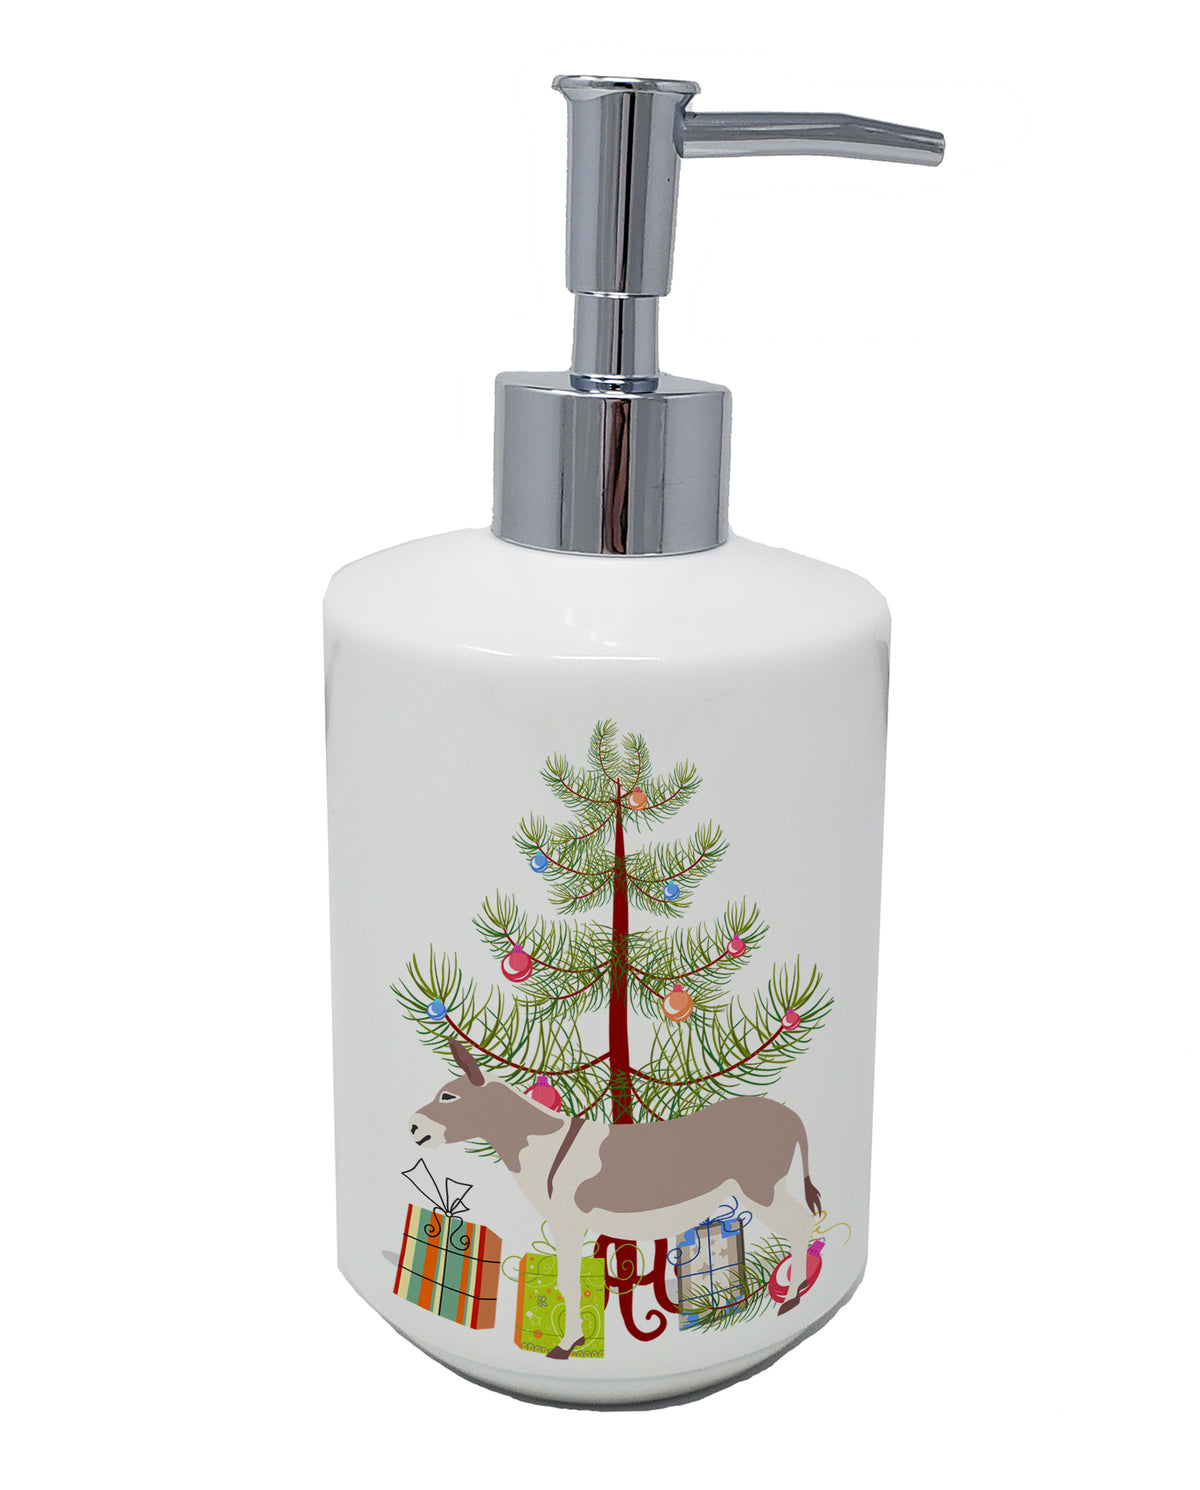 Buy this Australian Teamster Donkey Christmas Ceramic Soap Dispenser